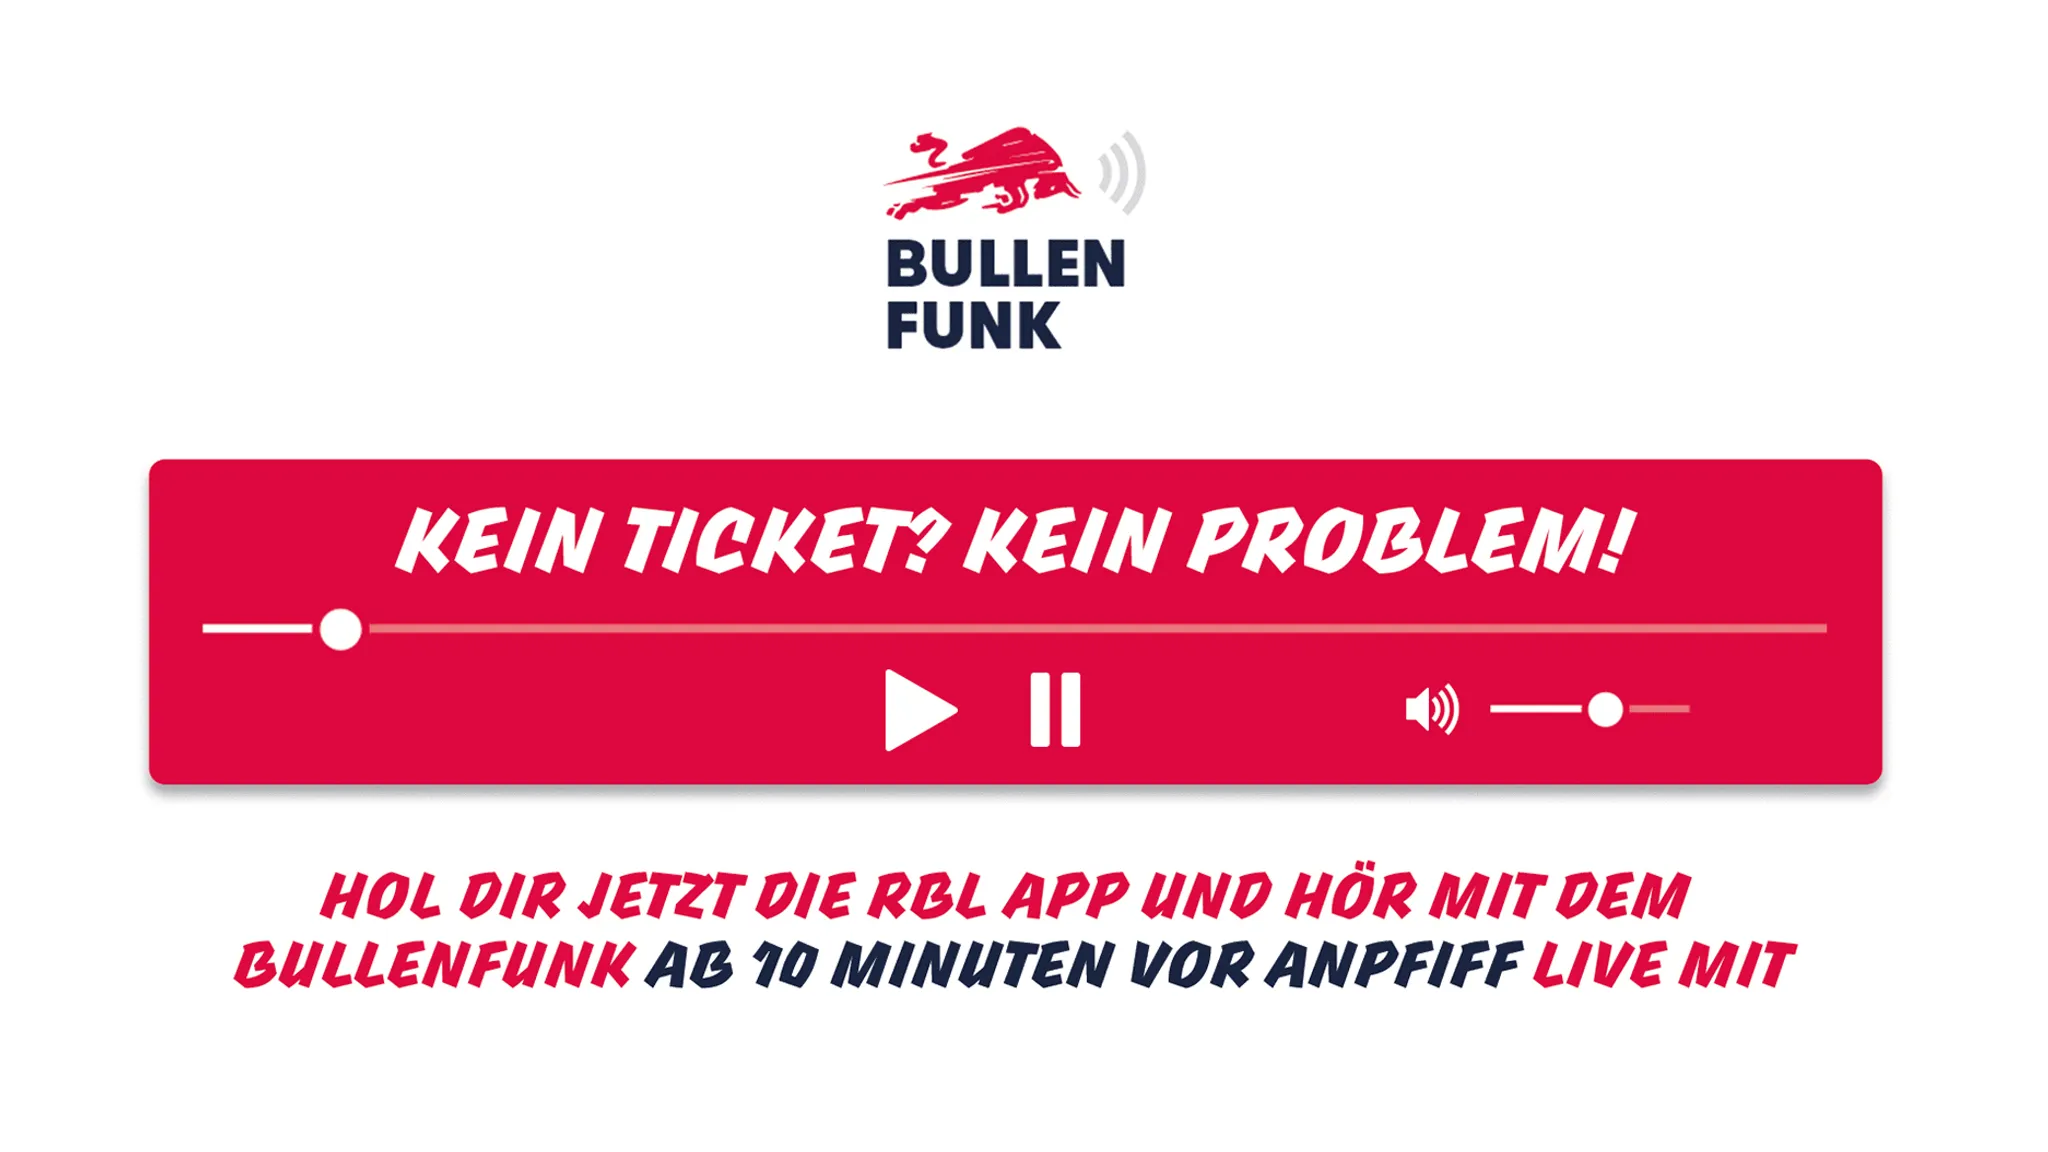 Bullenfunk FM von RB Leipzig